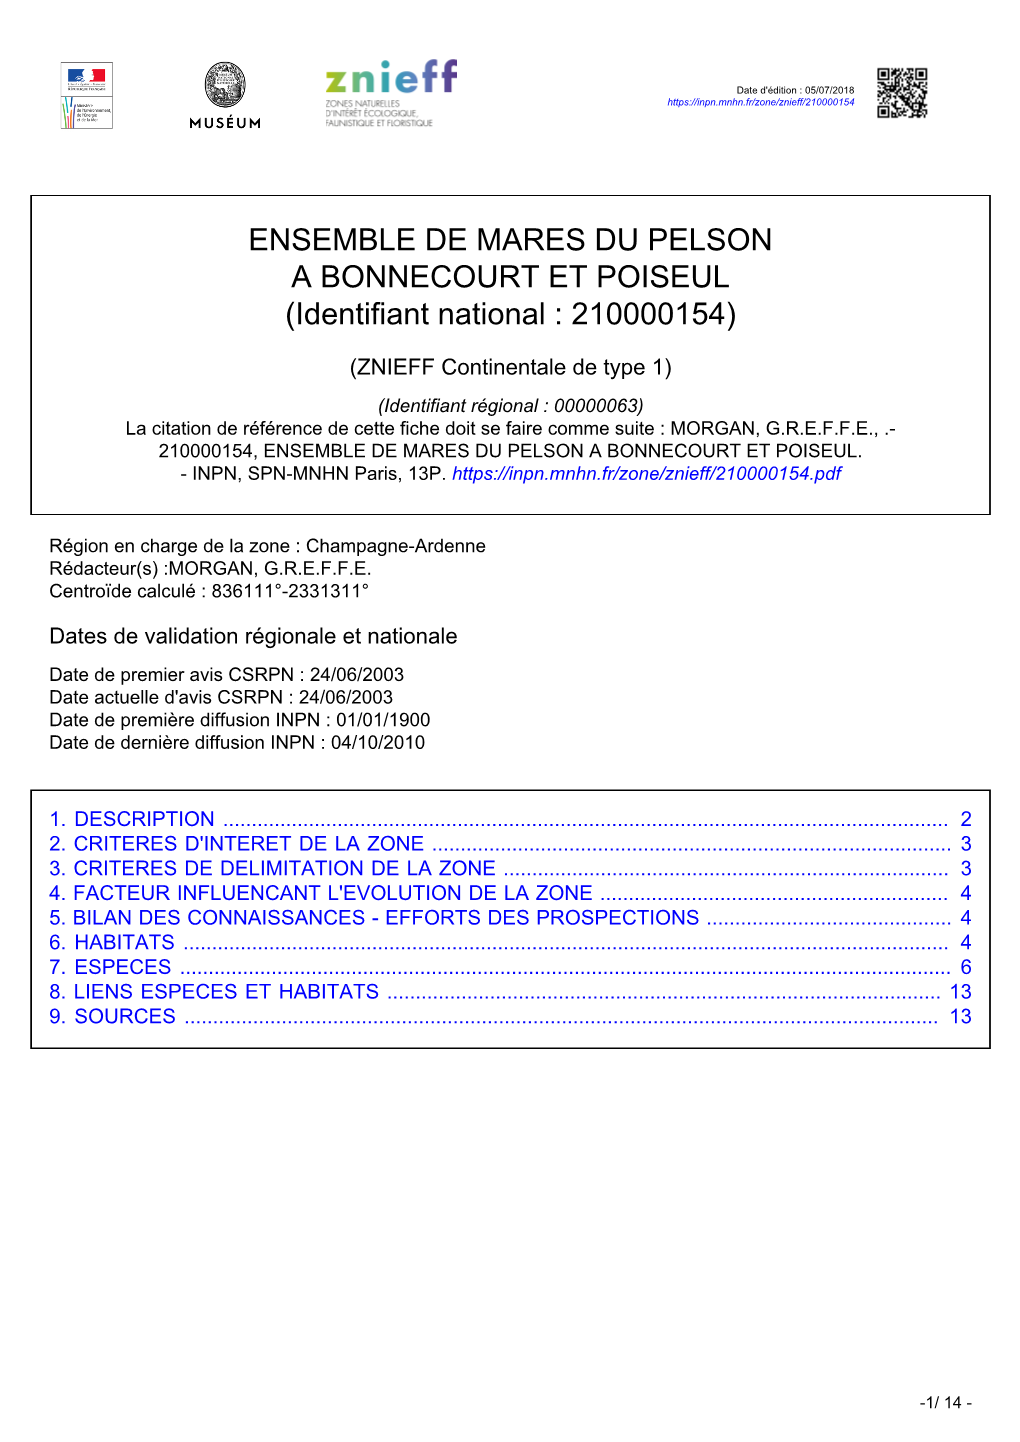 ENSEMBLE DE MARES DU PELSON a BONNECOURT ET POISEUL (Identifiant National : 210000154)